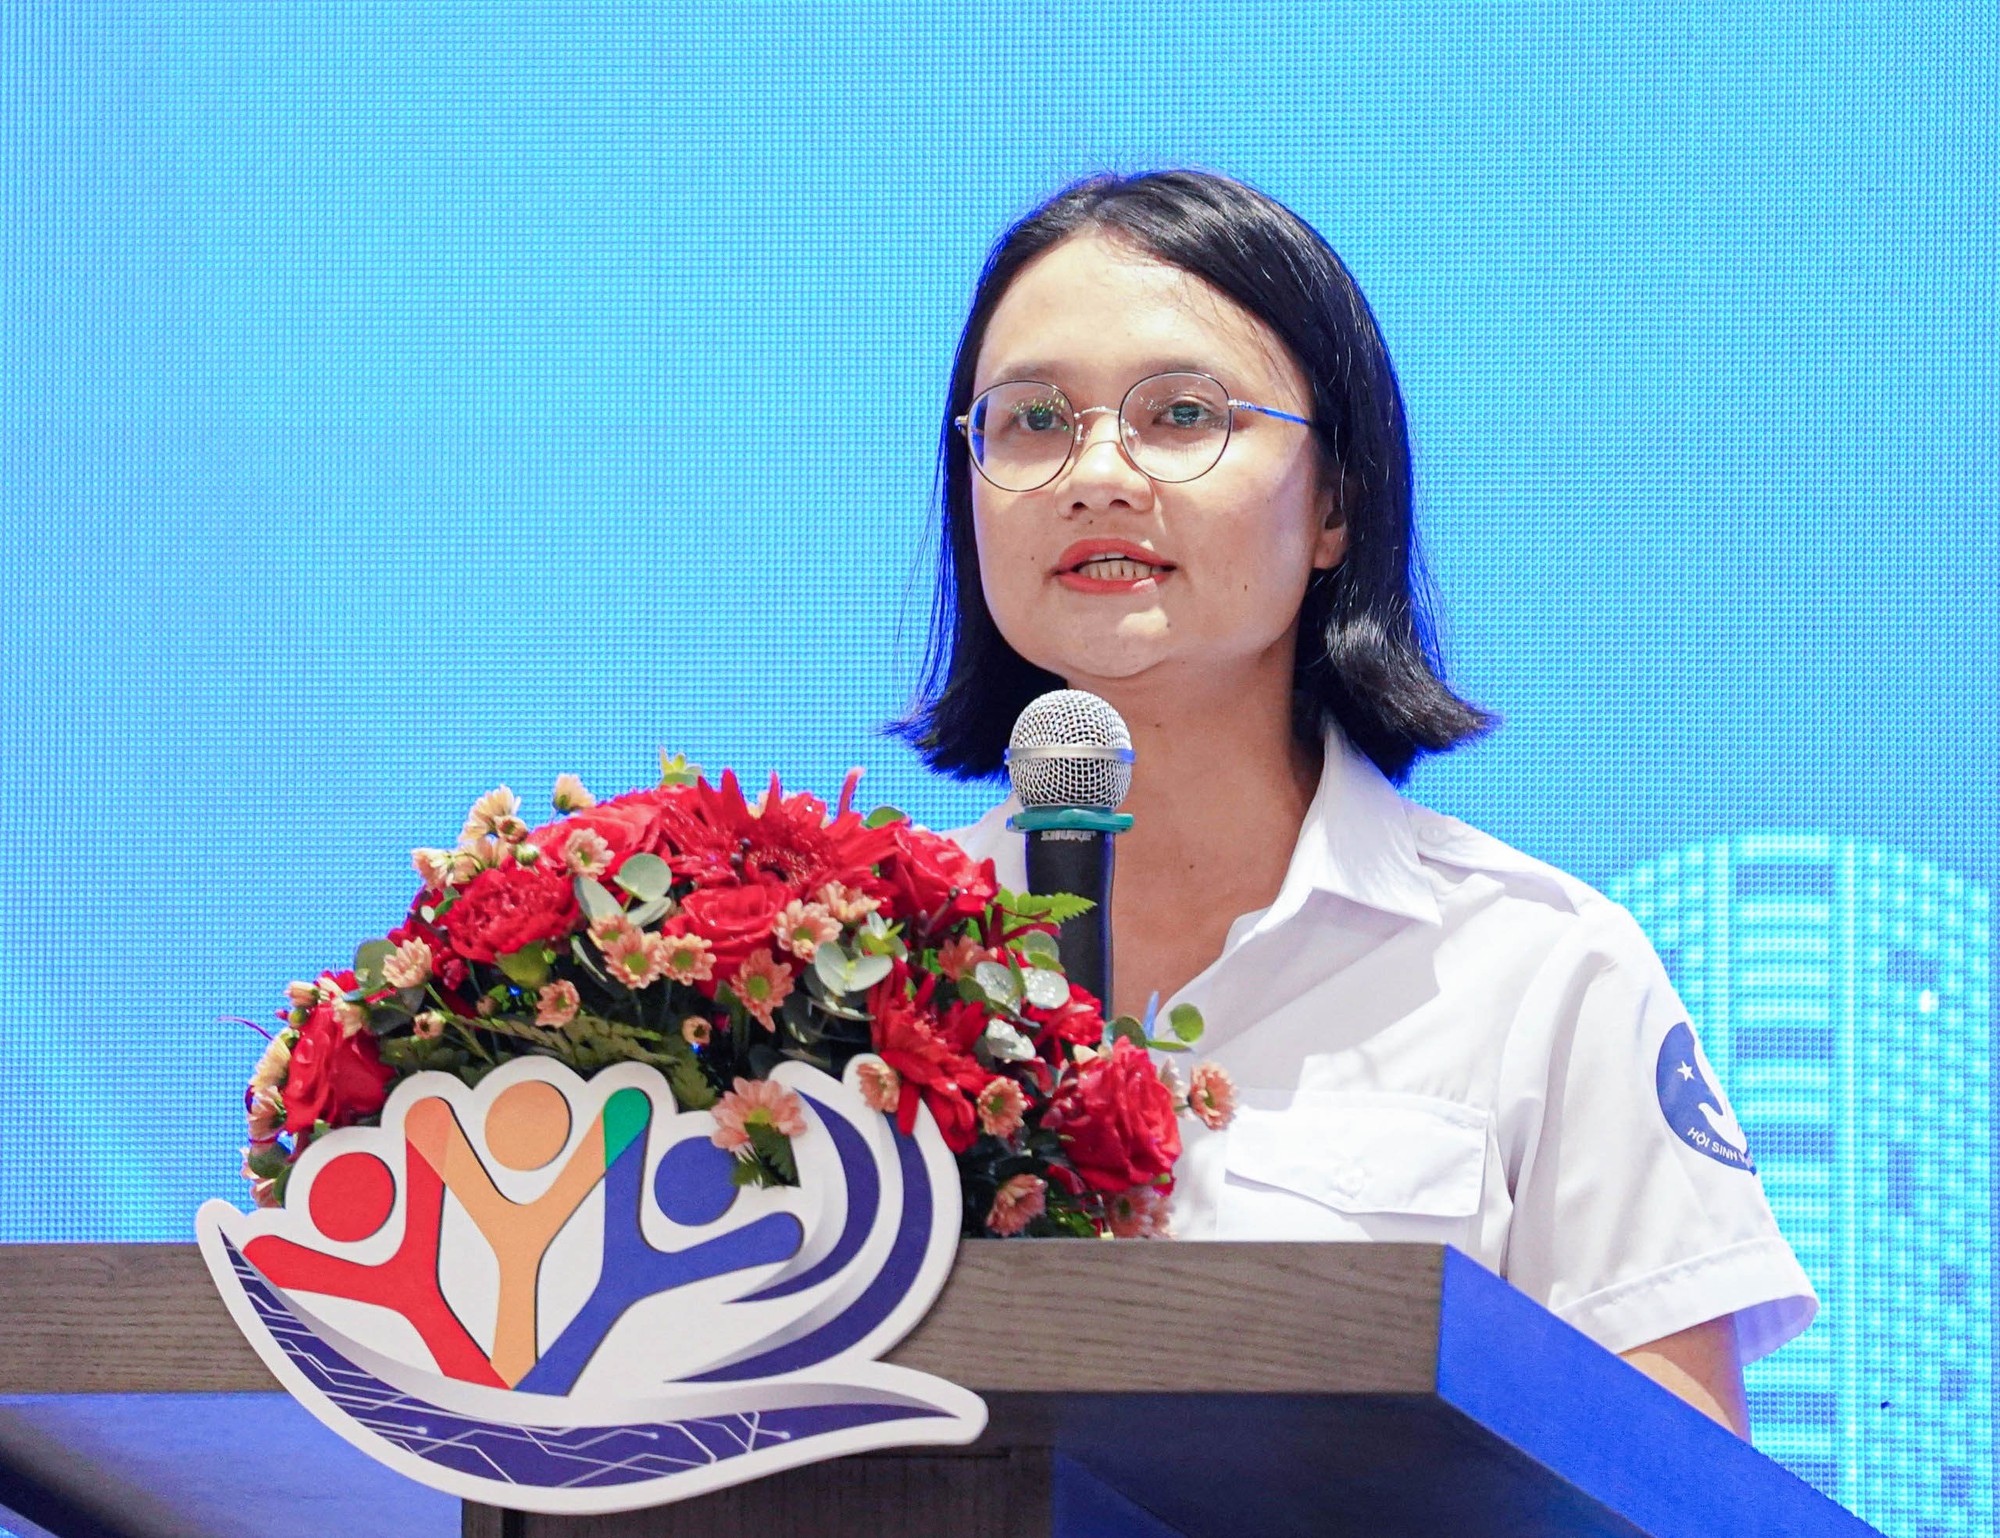 Hơn 60 sinh viên quốc tế đến Việt Nam tham gia diễn đàn khoa học - Ảnh 4.